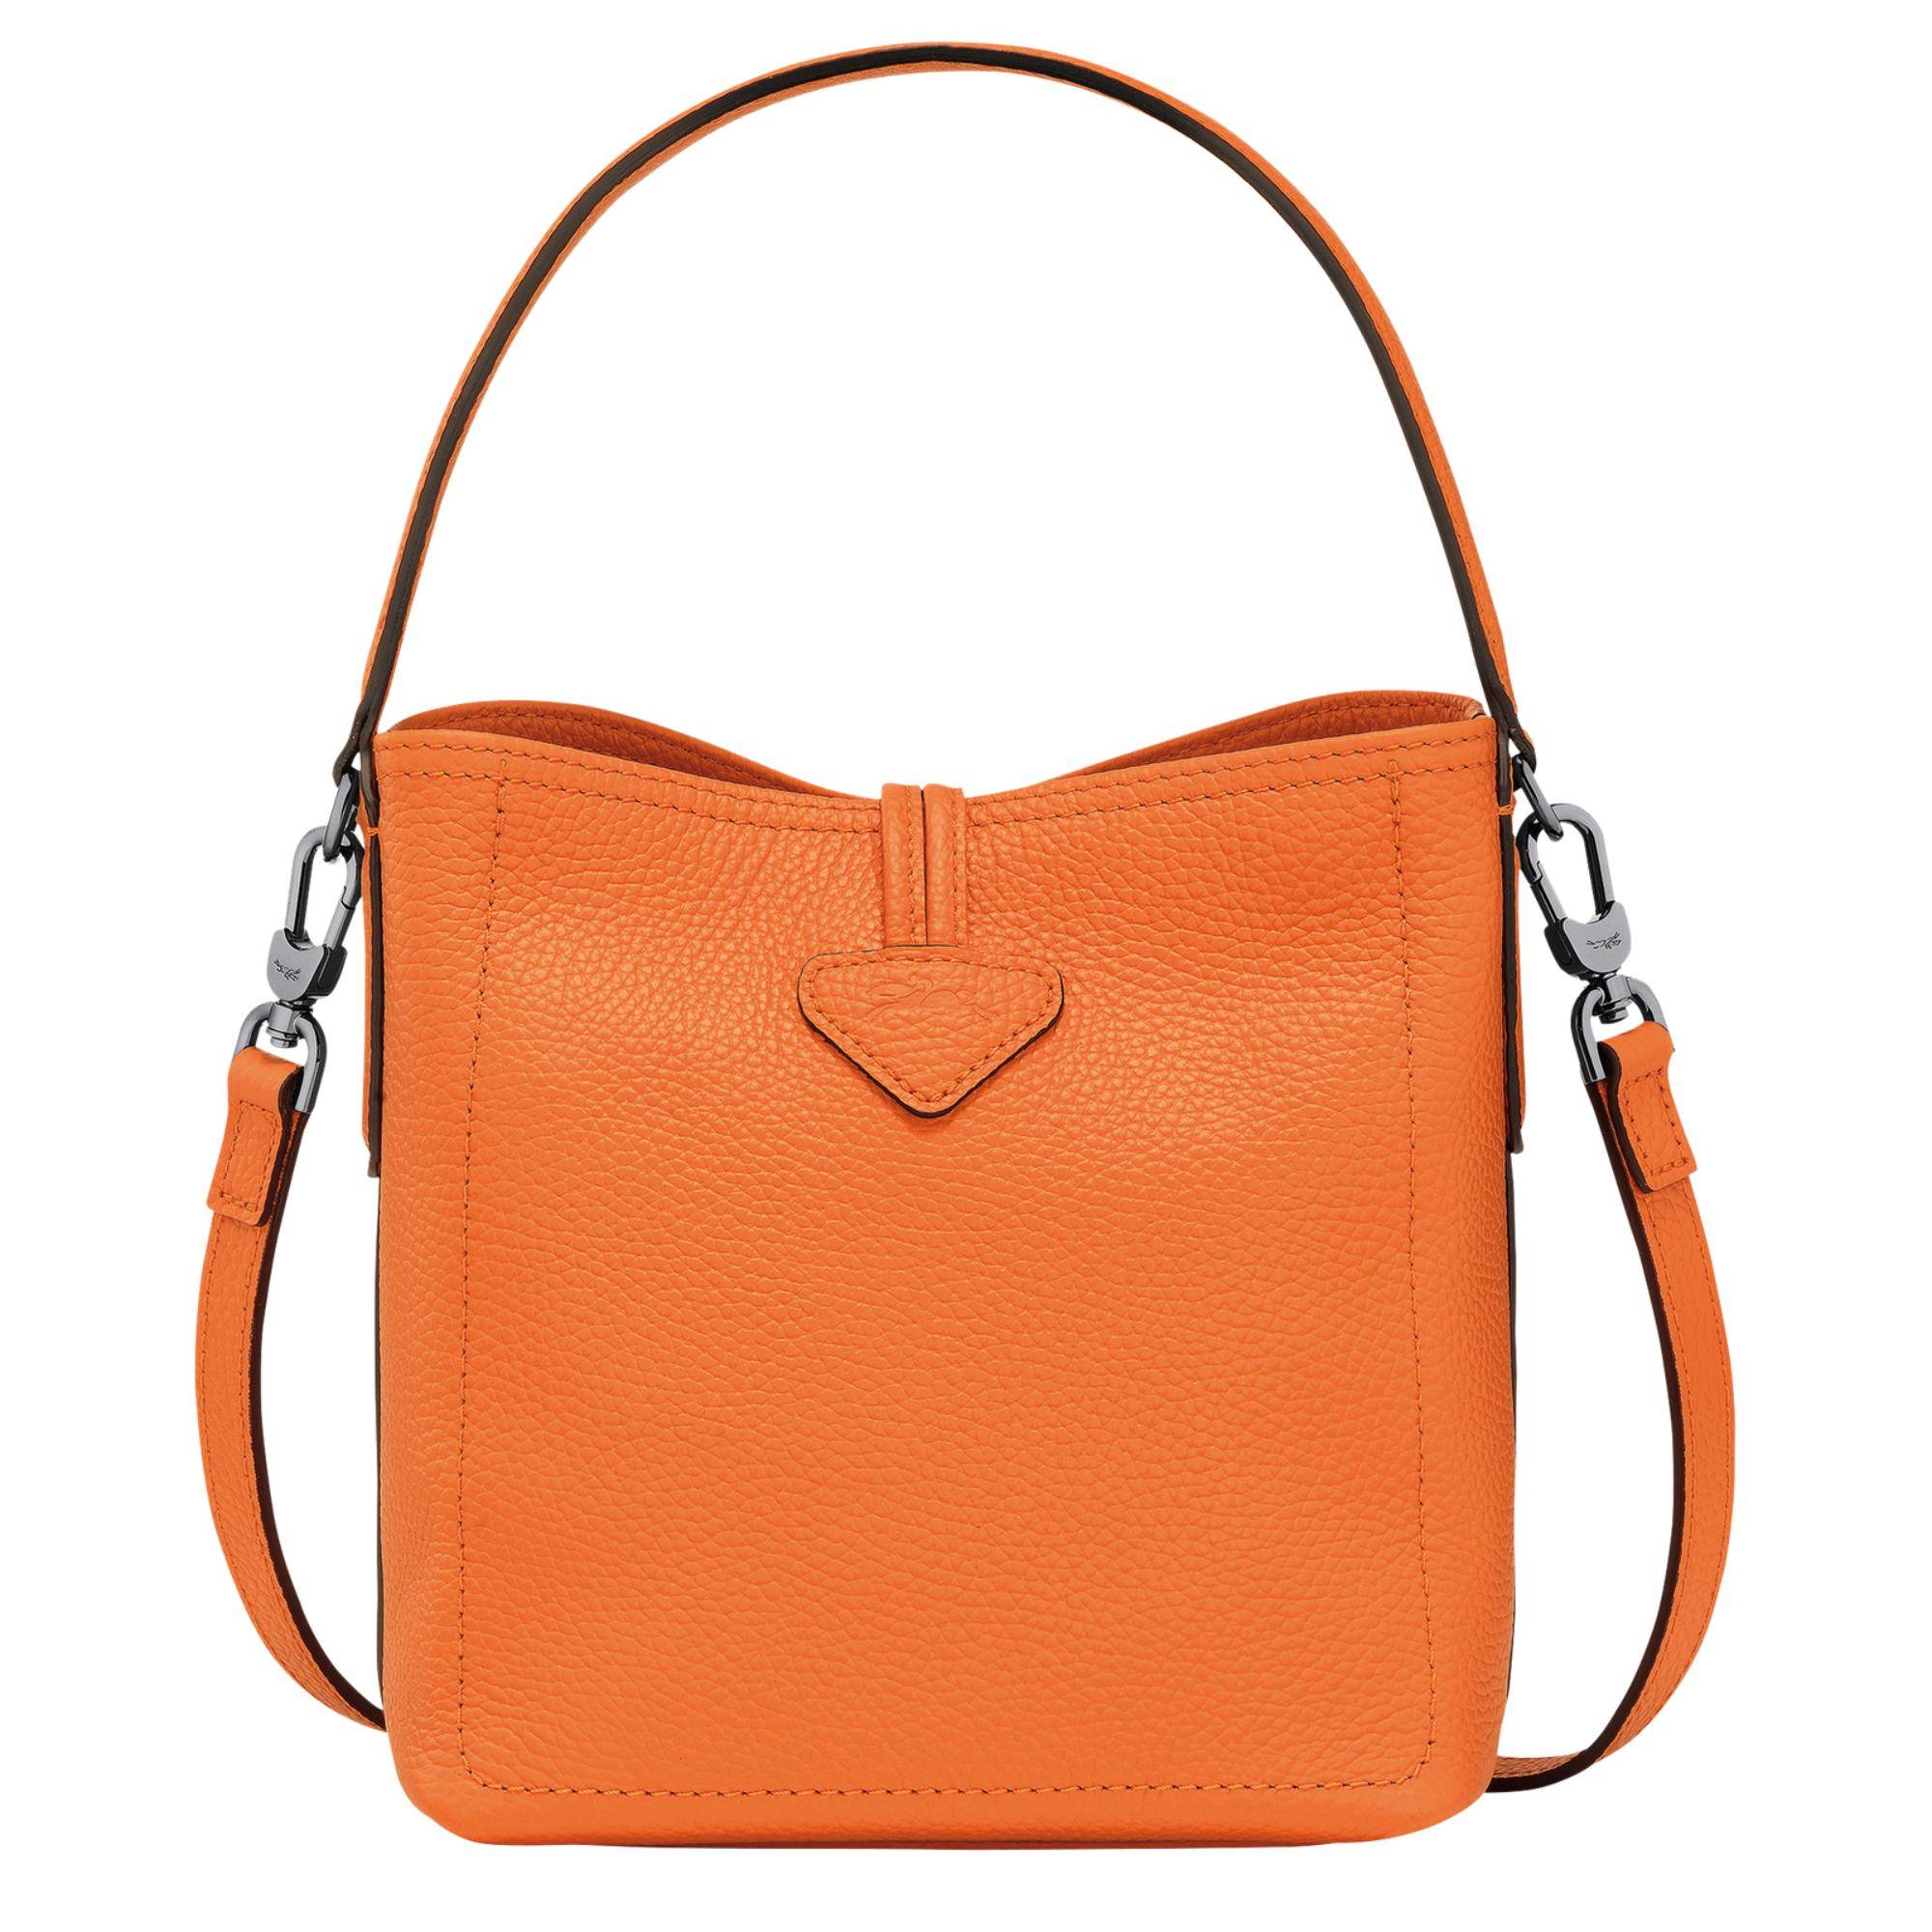 Sac seau Longchamp Roseau Essential S 10159 968 217 couleur orange, vue de dos